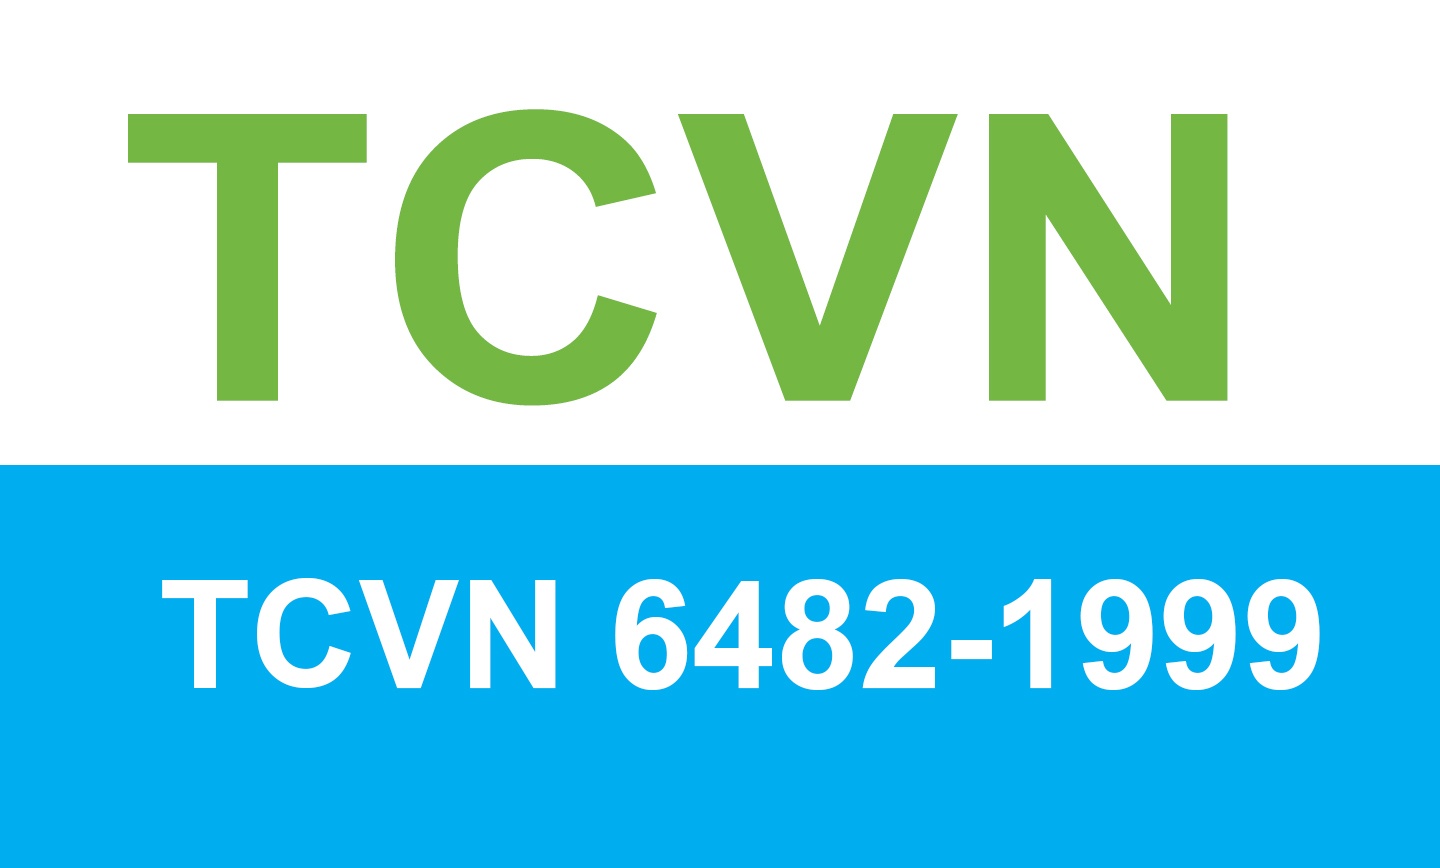 TCVN 6482-1999